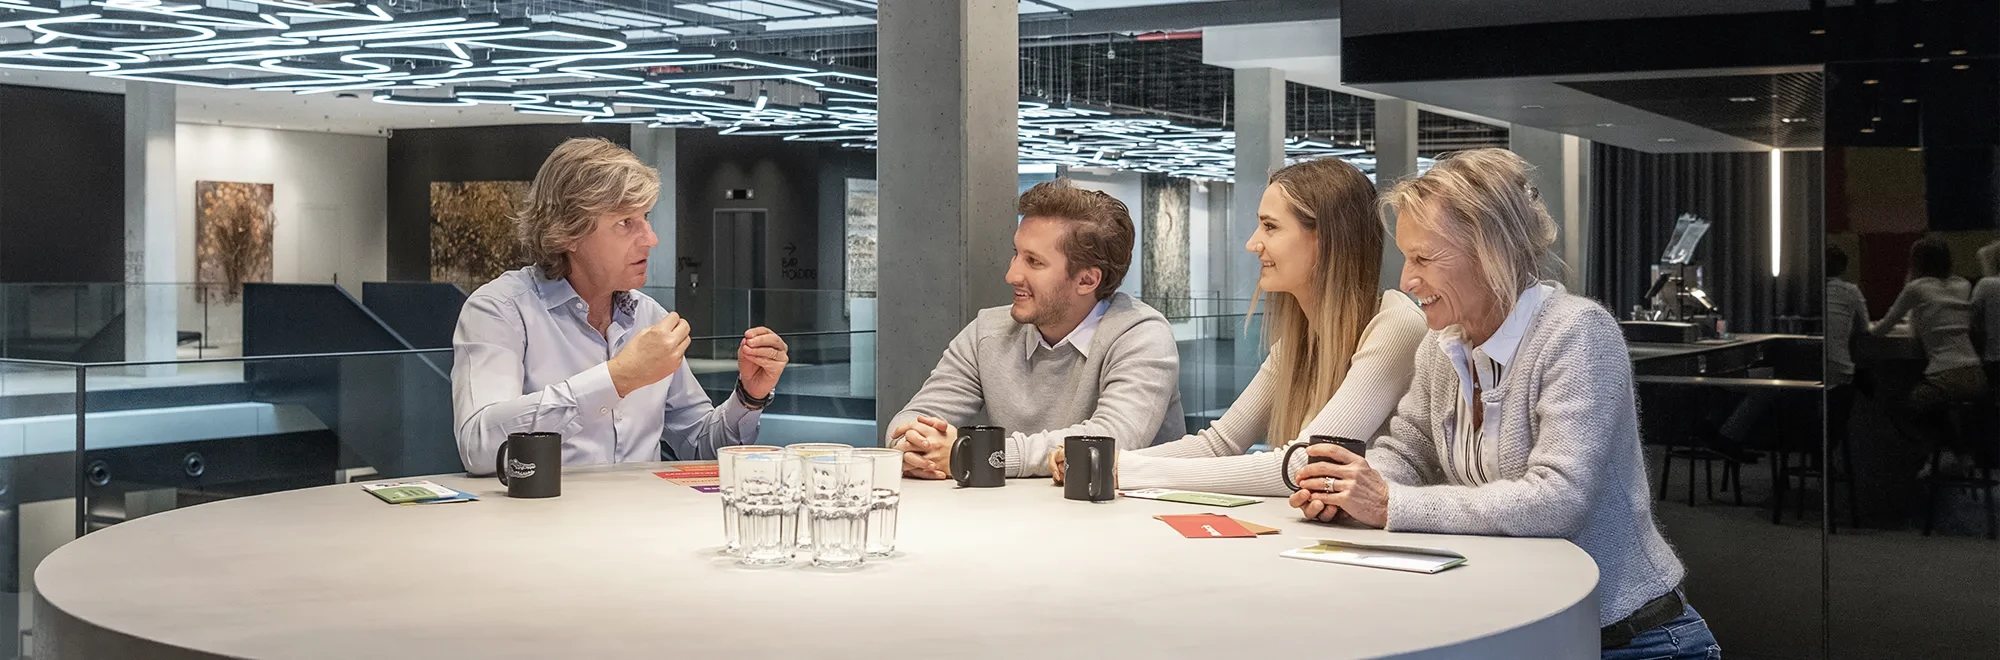 Jens Plath im Gespräch mit einem Team bestende auseinem jüngeren Mann und zwei unterschiedliche alten Frauen an einem Tisch